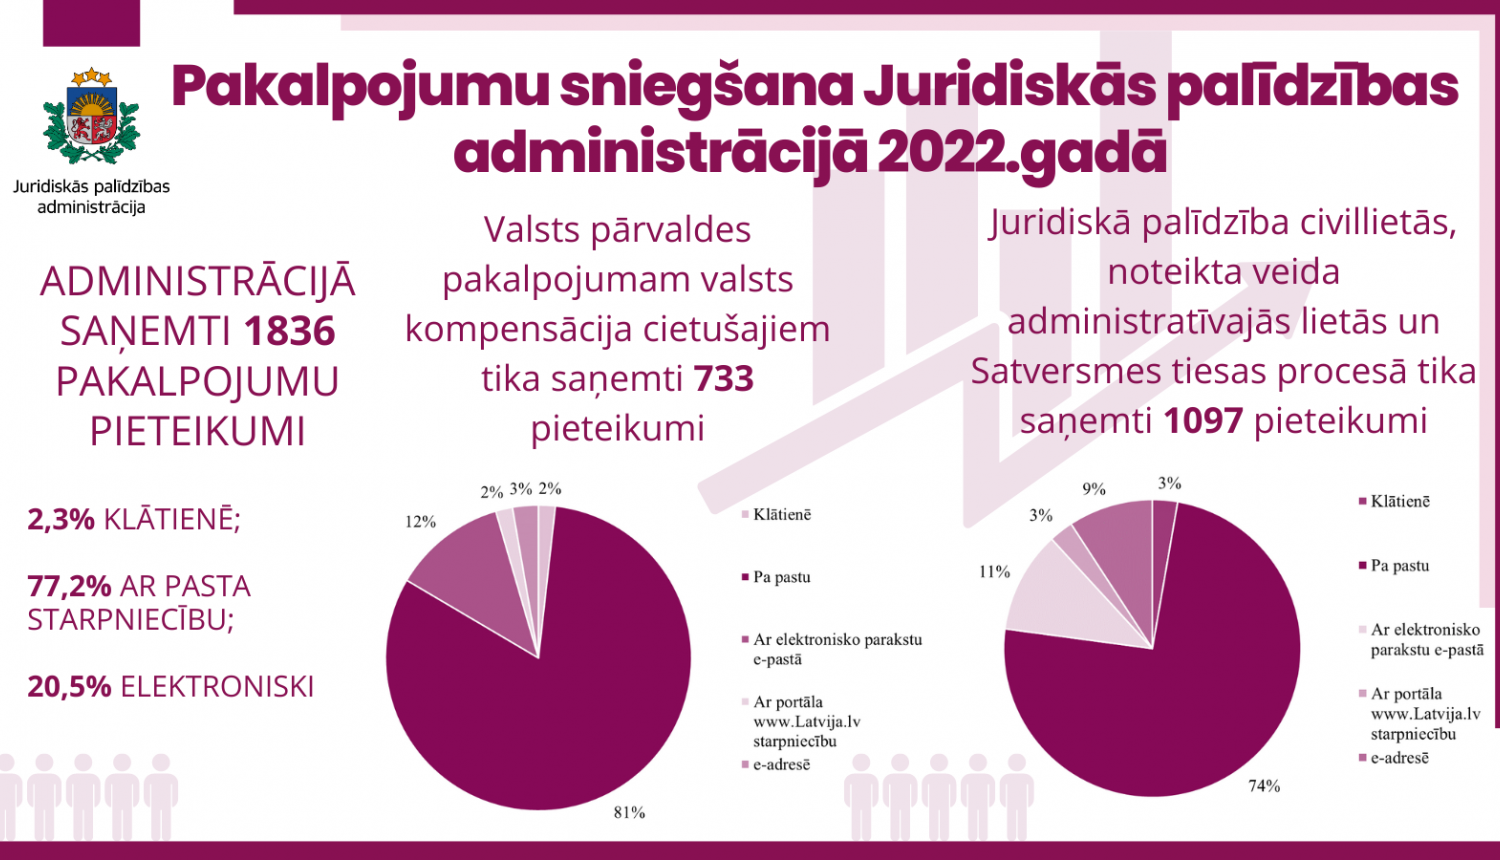 Pakalpojumu sniegšana Juridiskās palīdzības administrācijā 2022.gadā